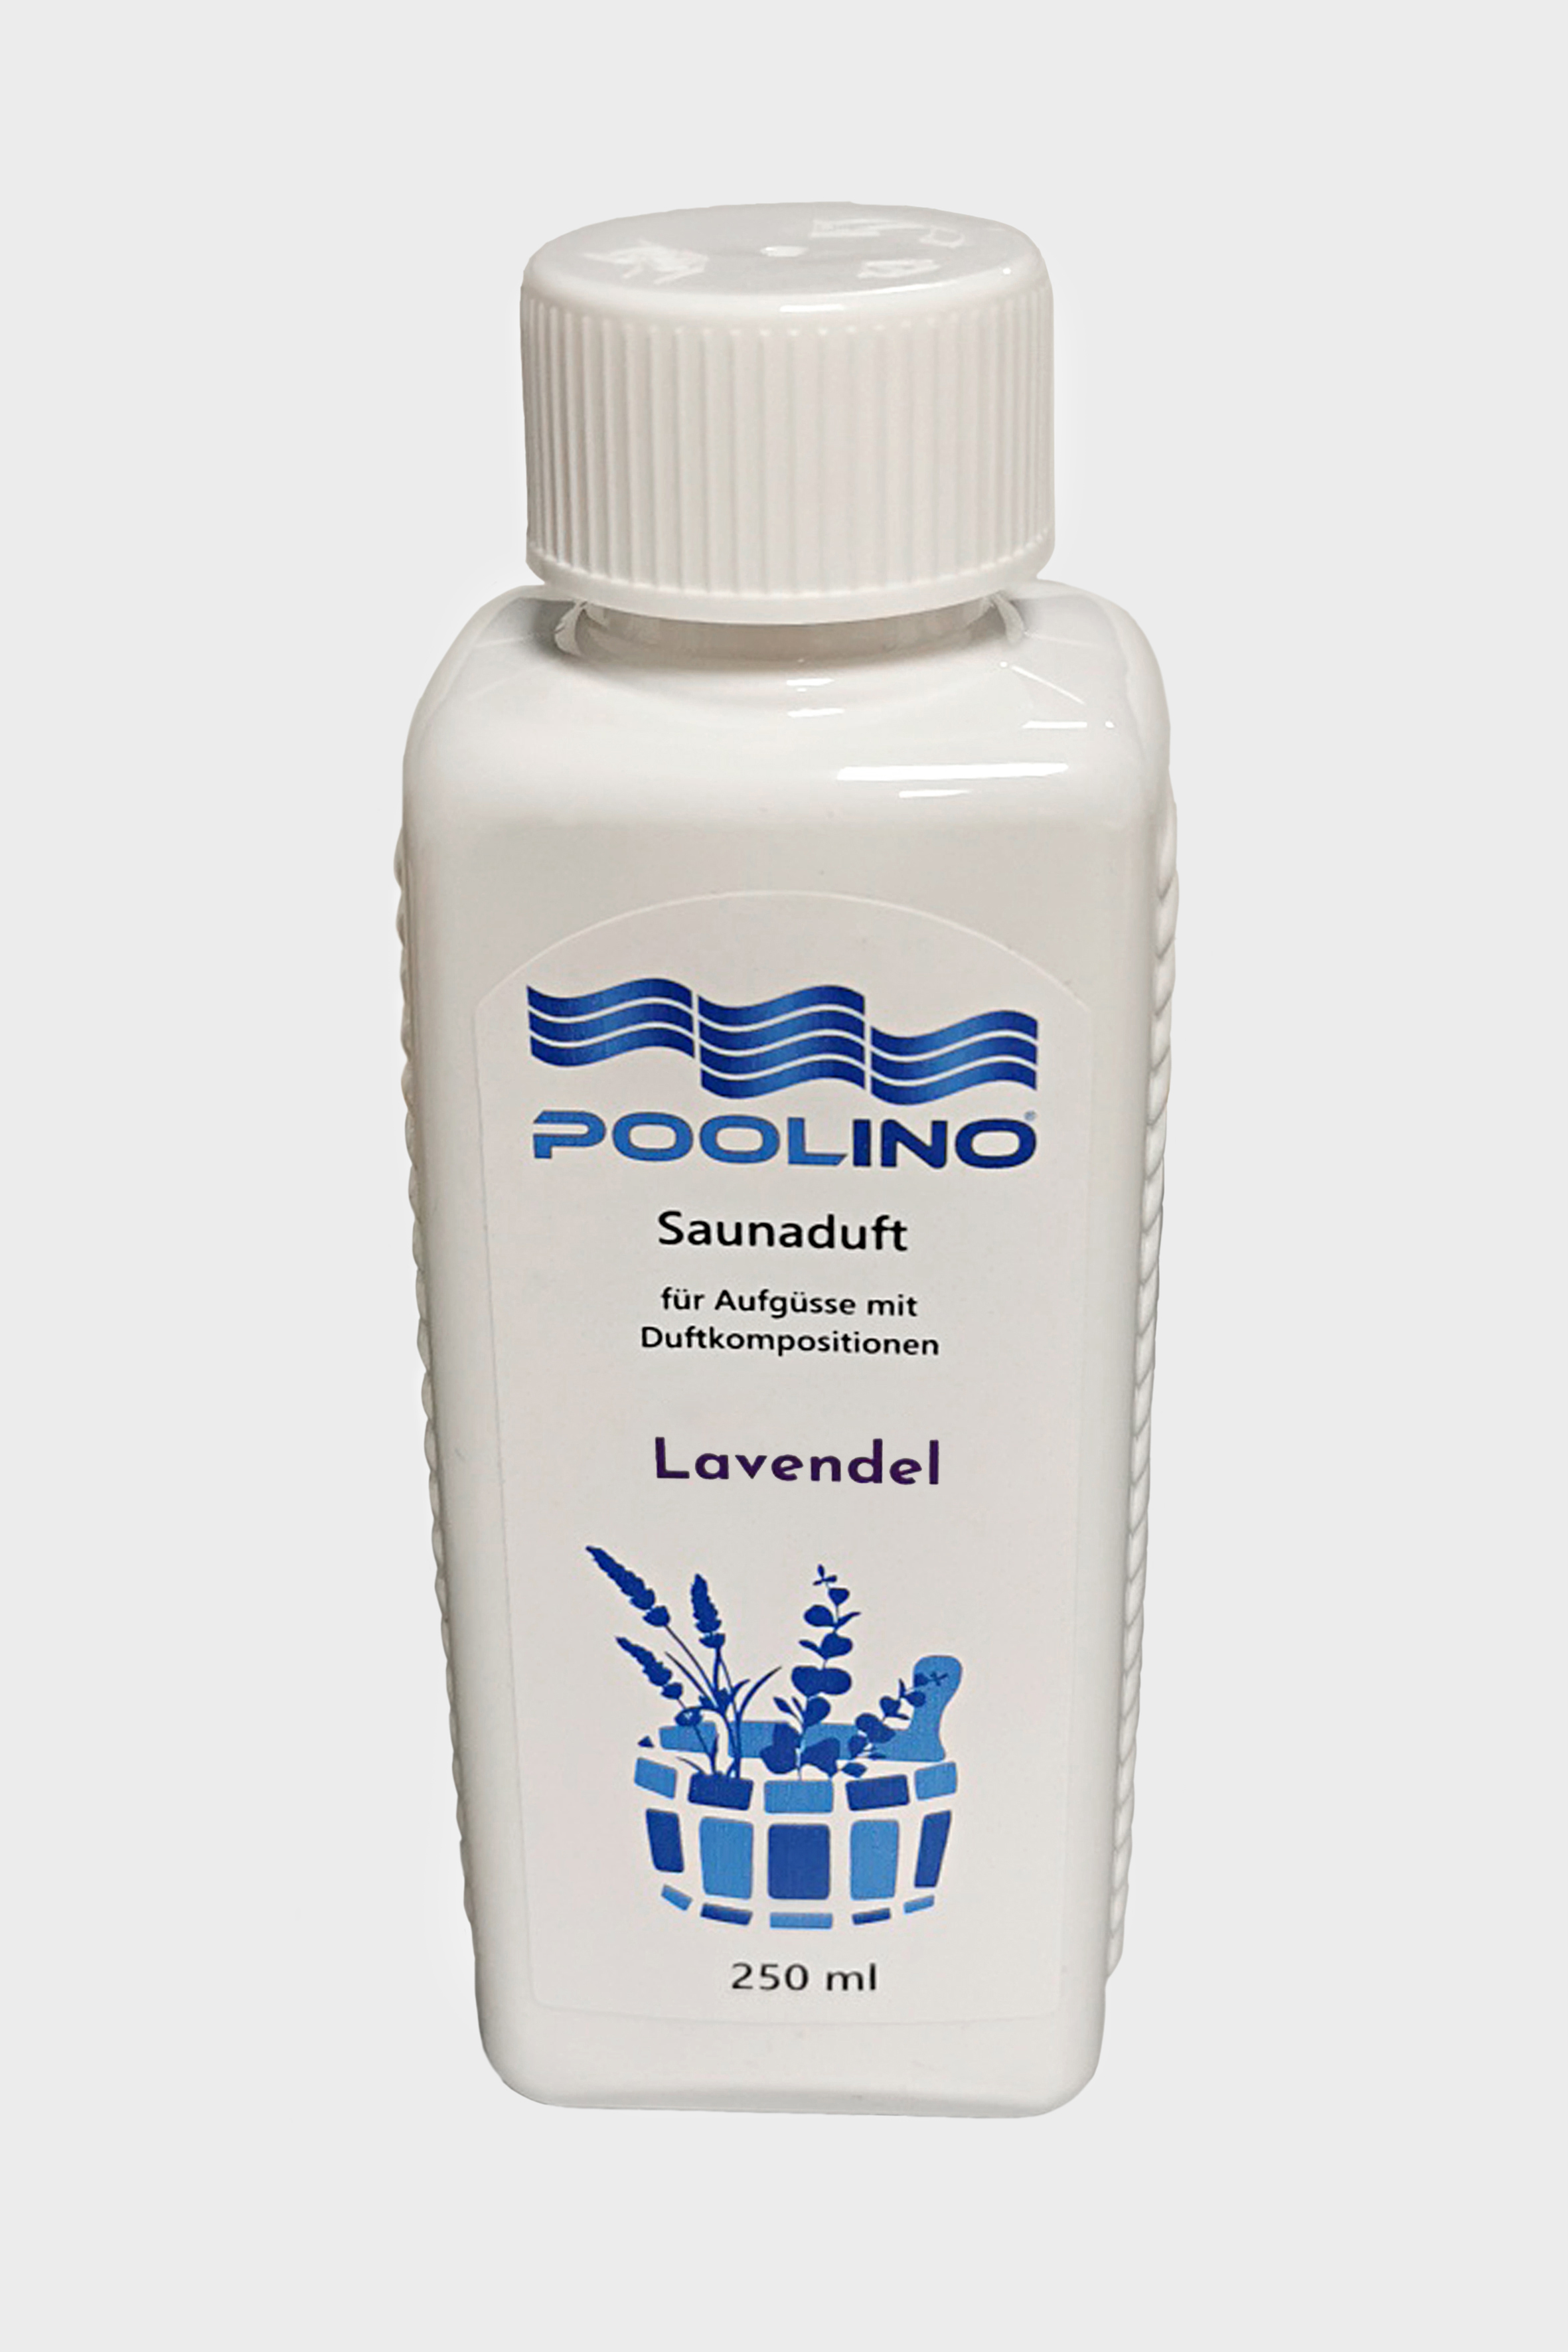 250 ml Poolino® Saunaduft Lavendel Aufgusskonzentrat